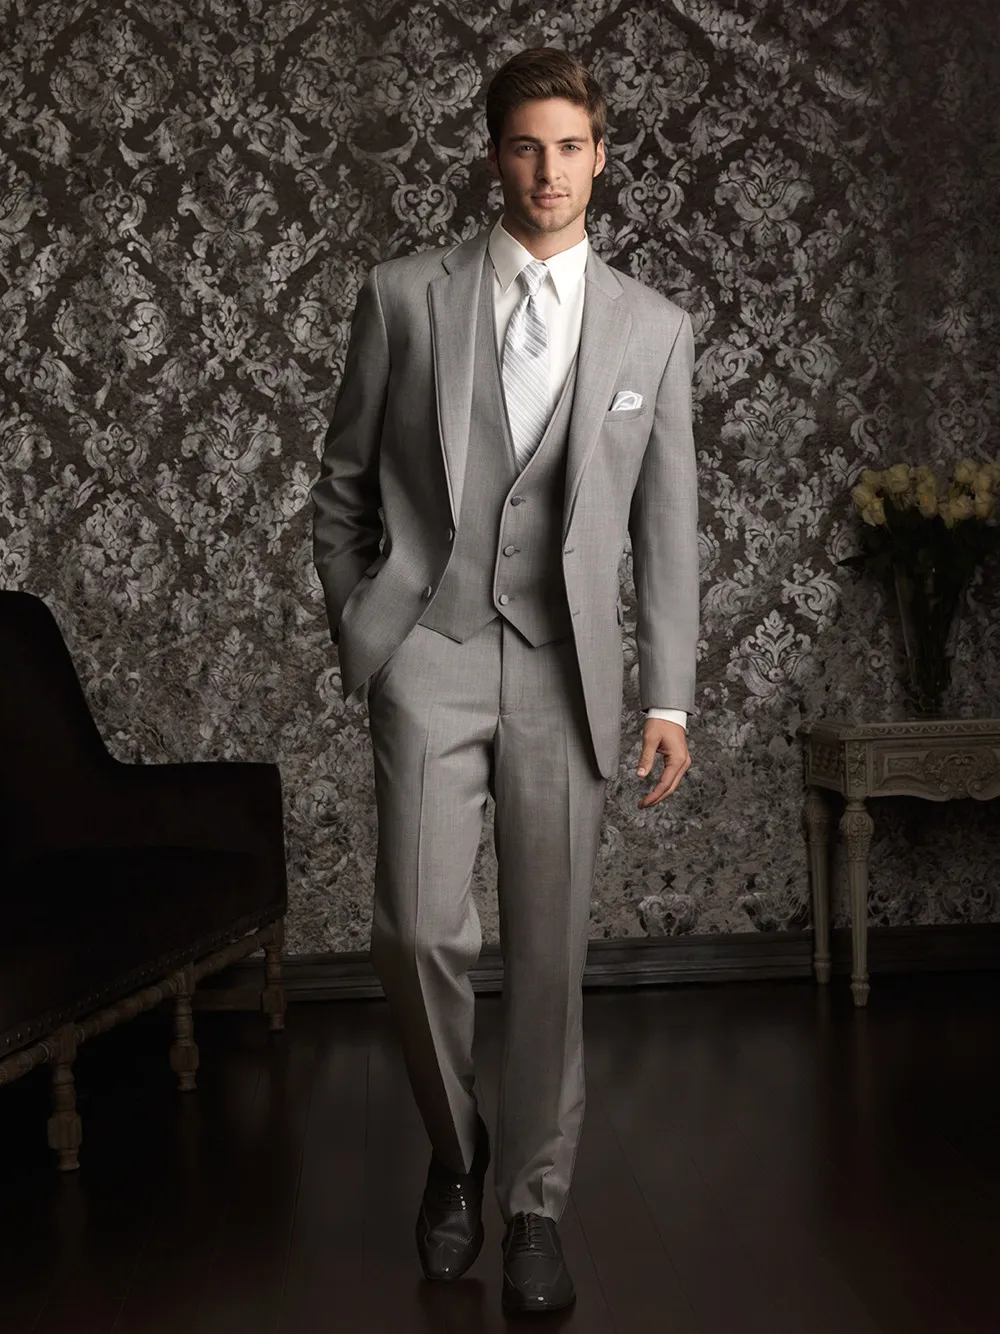 2016 Custom made Mens Açık Gri Takım Elbise Moda Resmi Elbise Erkekler Suit Set erkekler düğün takımları damat smokin Ceket + Pantolon + Yelek + Kravat